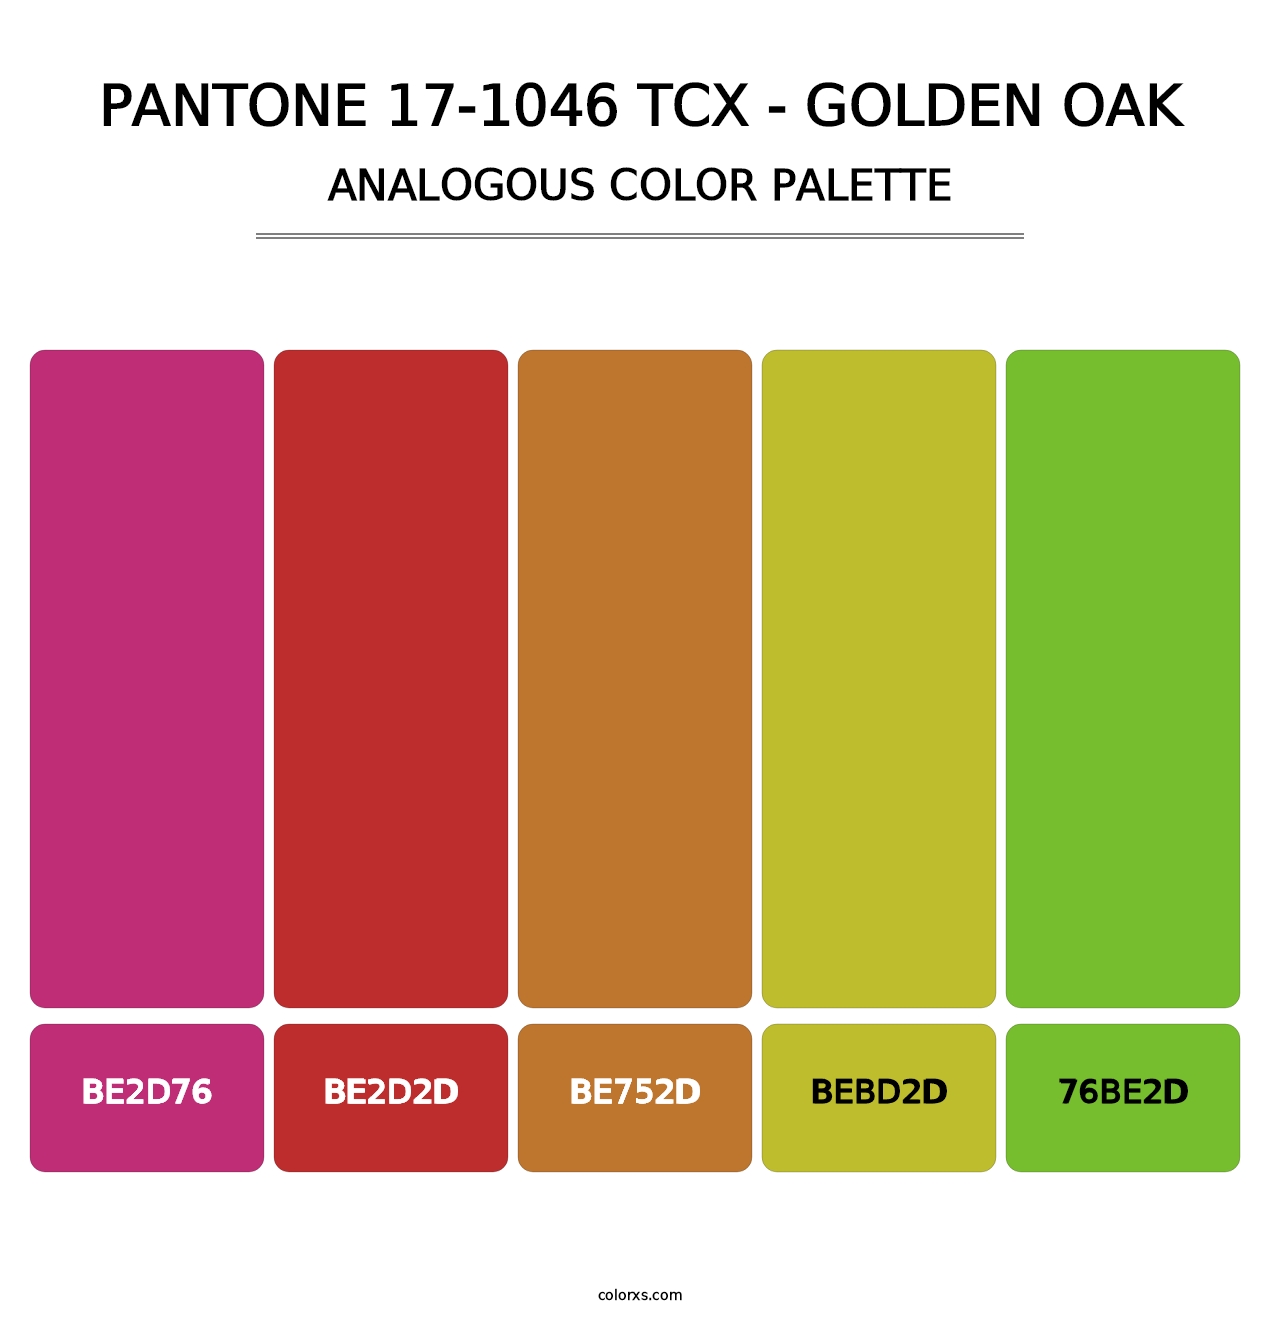 PANTONE 17-1046 TCX - Golden Oak - Analogous Color Palette